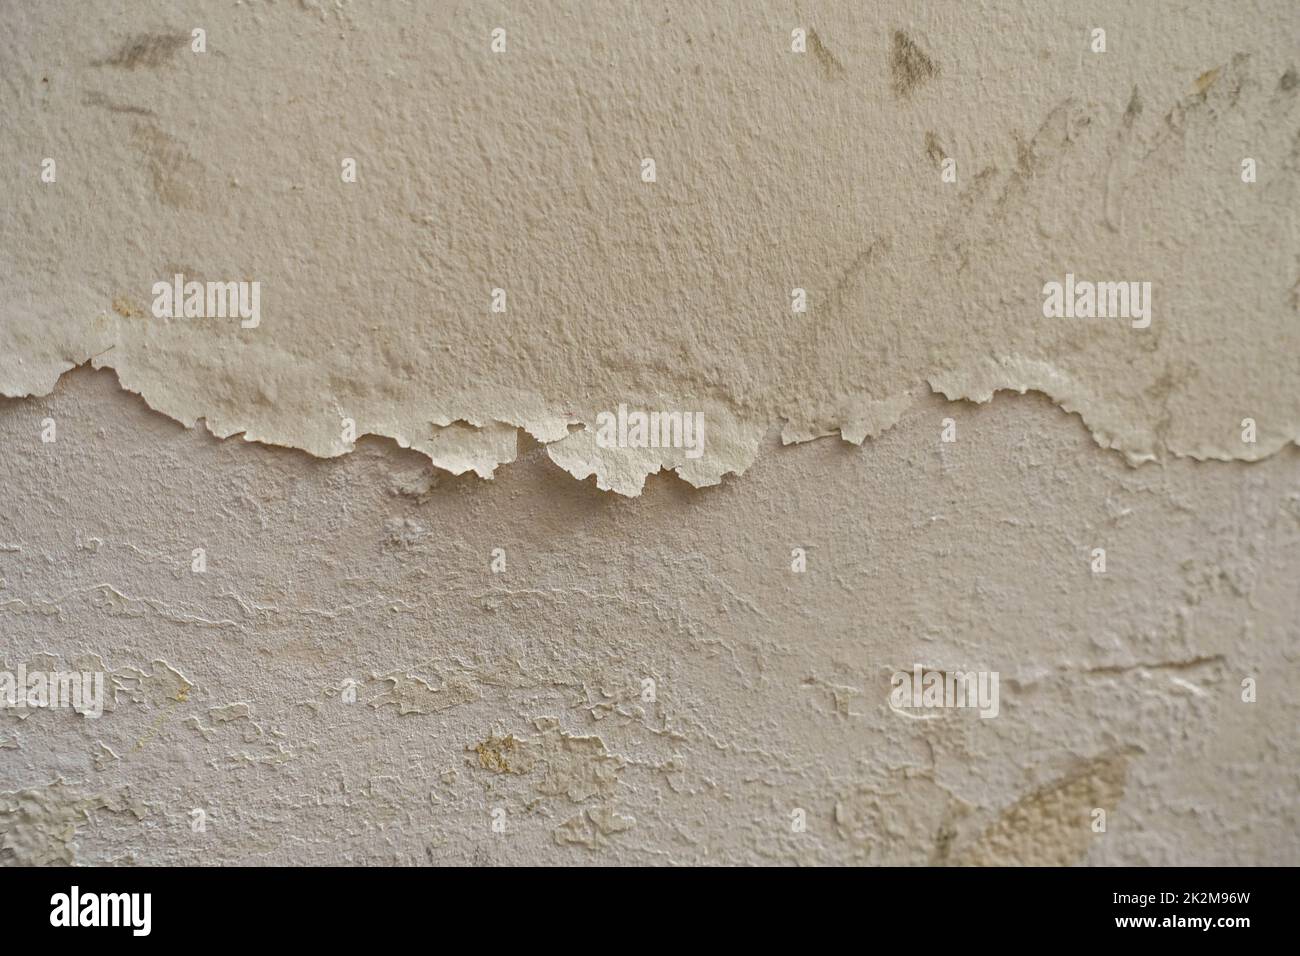 Die Wand, die aufgrund von Feuchtigkeit schimmelig und verformt ist Stockfoto